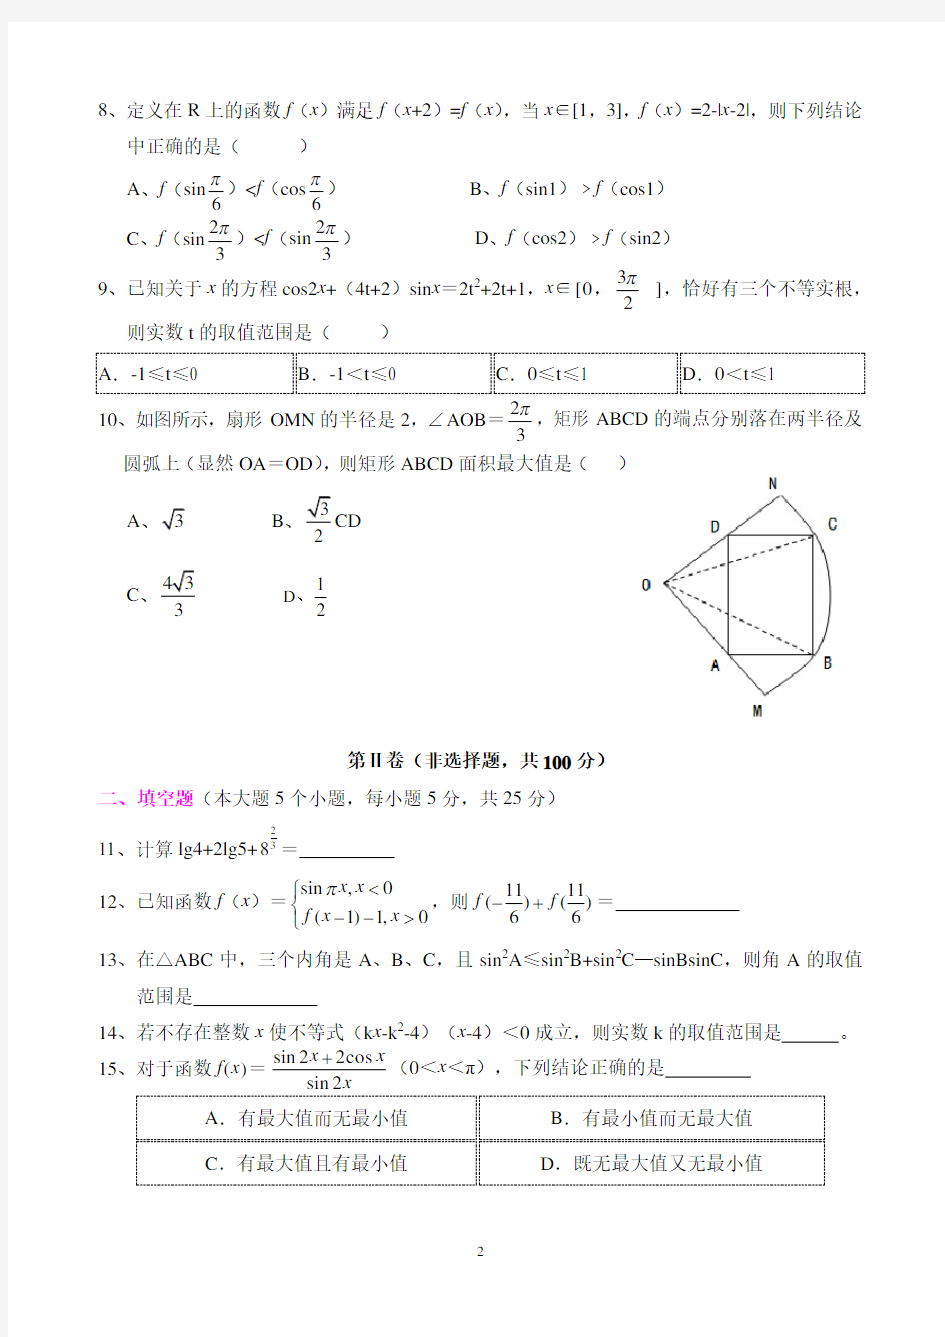 重庆南开中学高2017级高一(上)期末考试数学试题及其答案